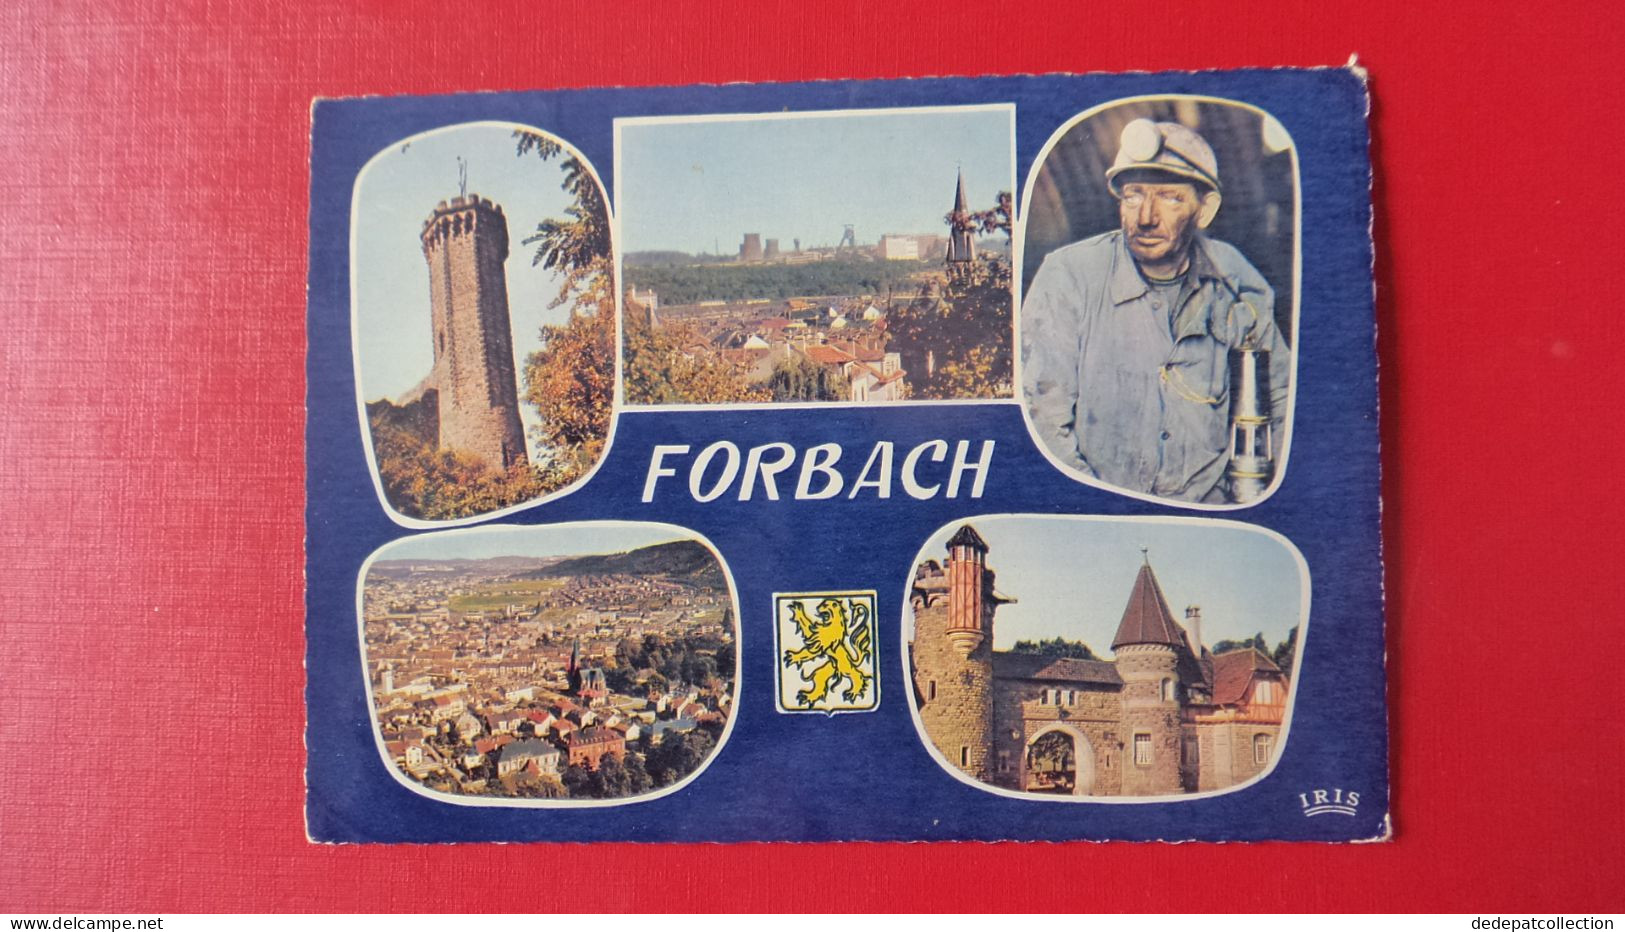 Forbach - Forbach